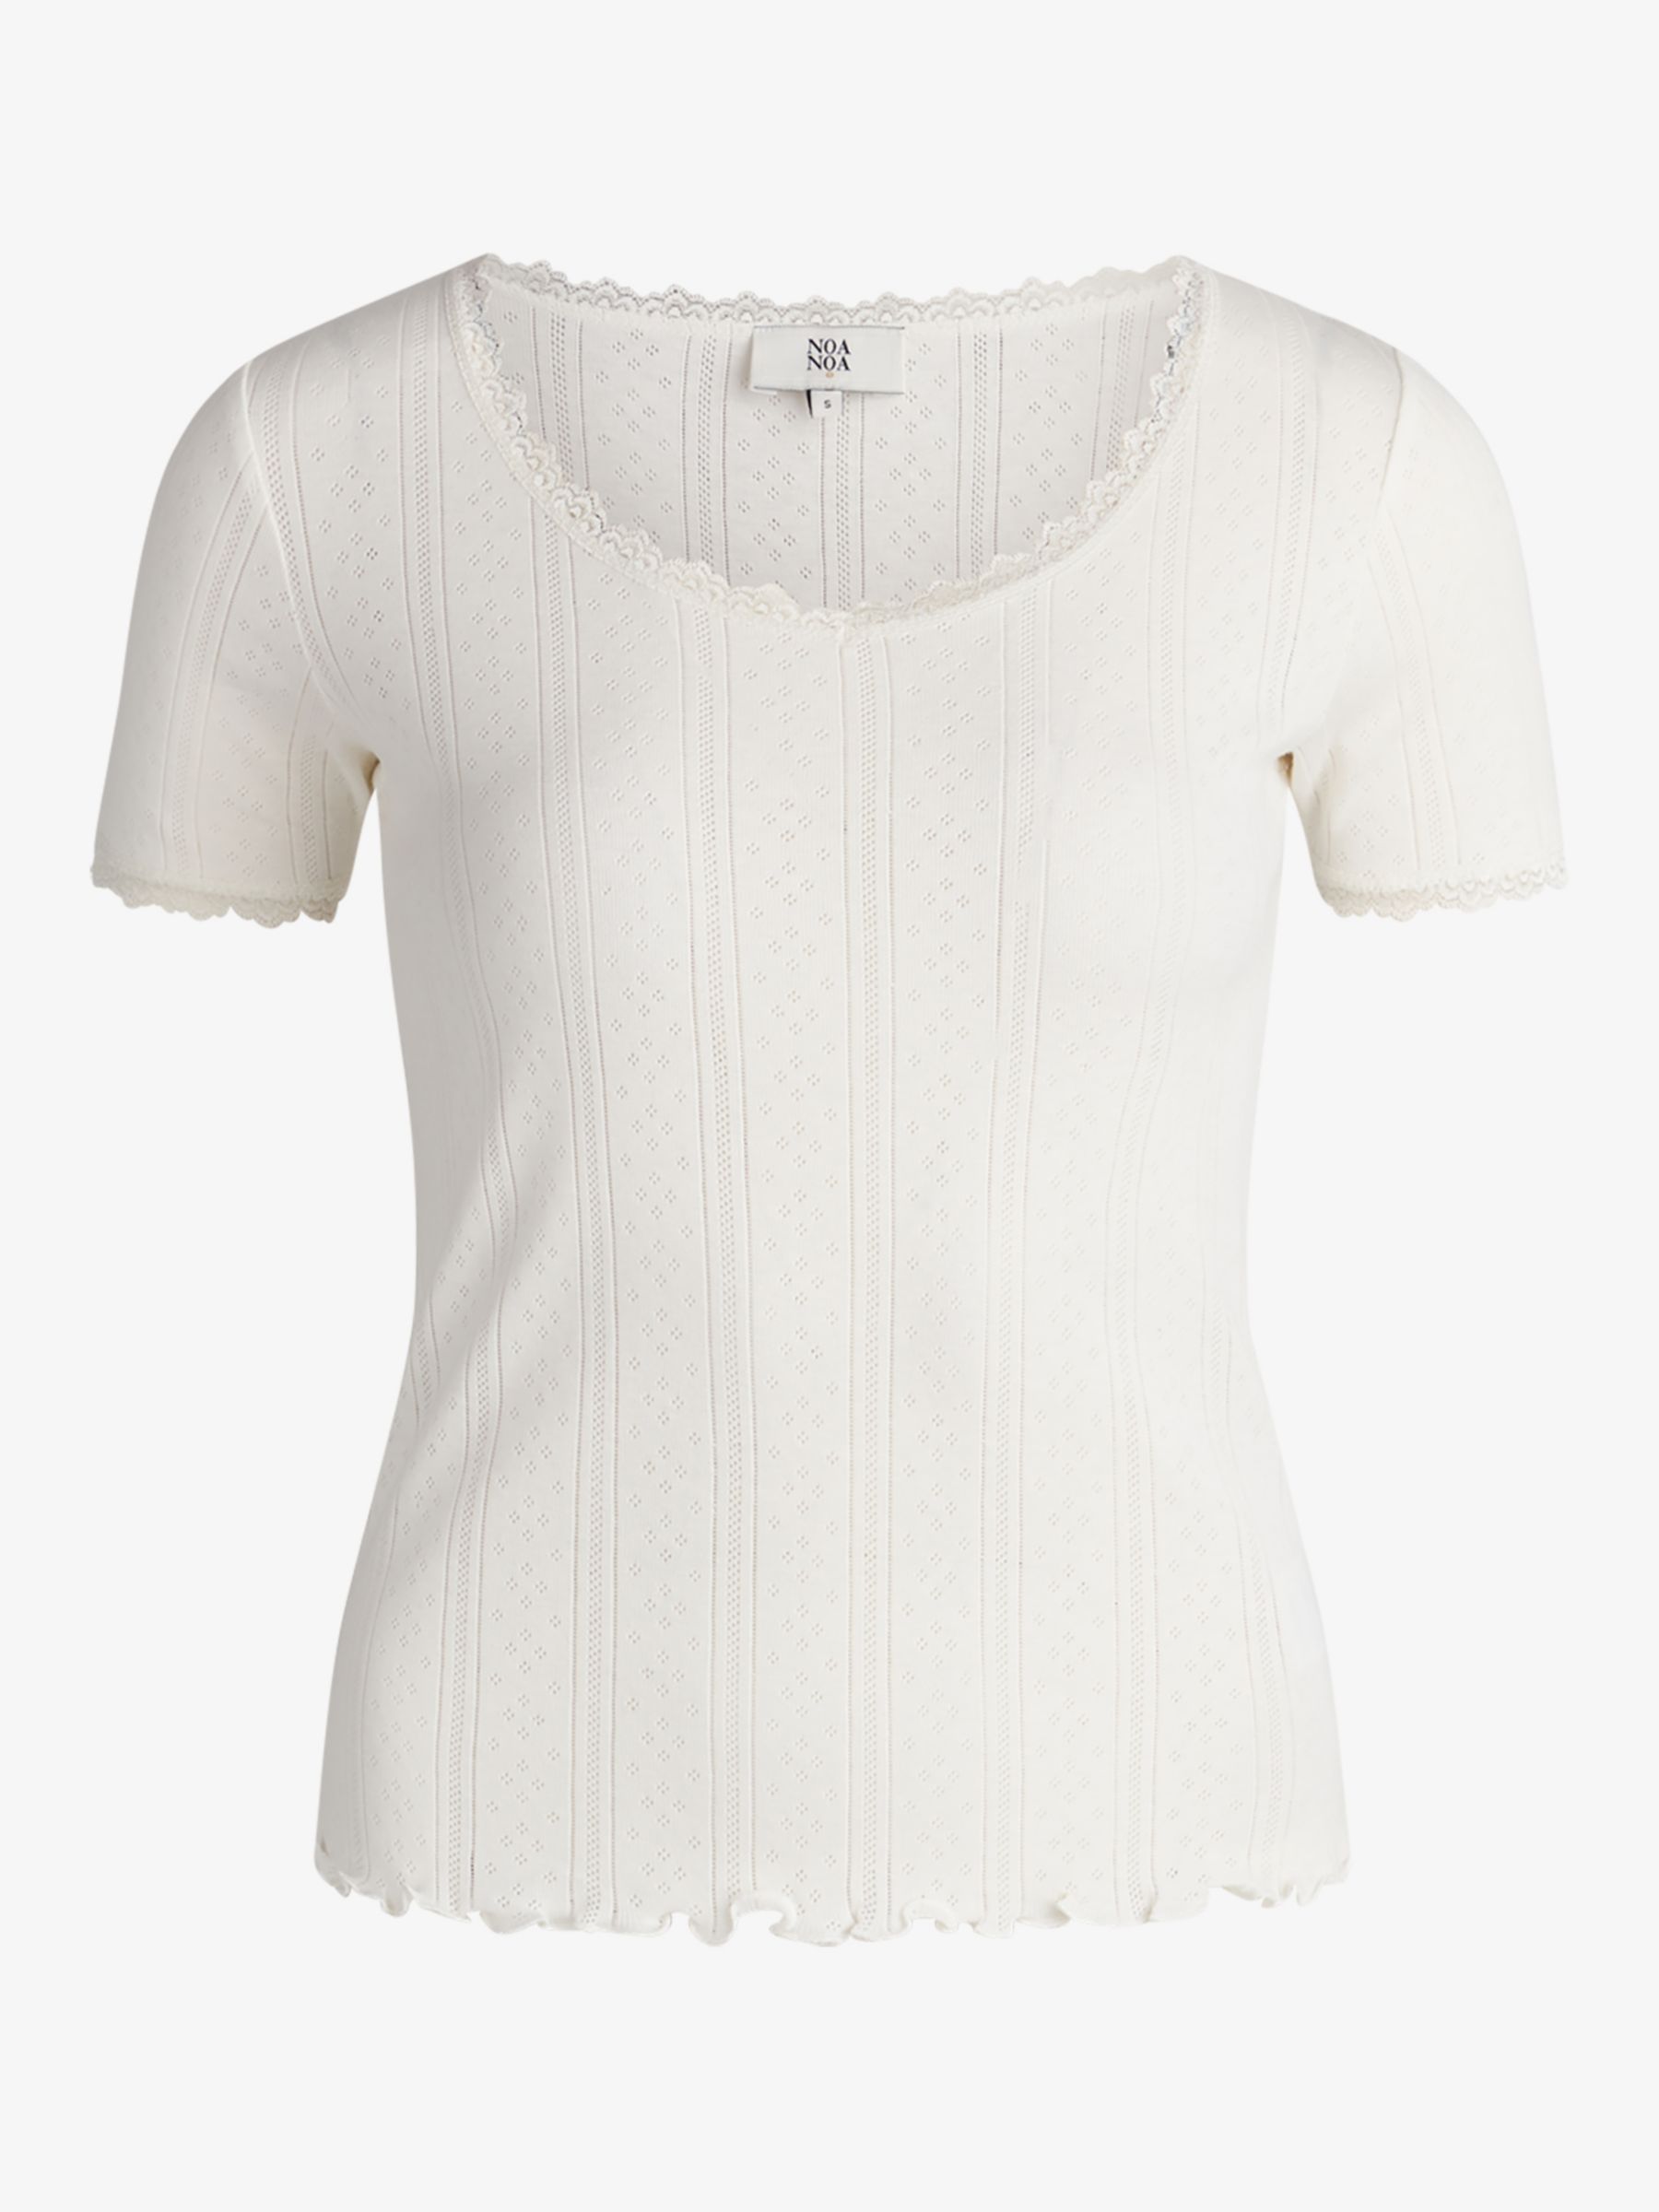 Noa Noa Mindy Pointelle Organic Cotton T-Shirt, White at John Lewis ...